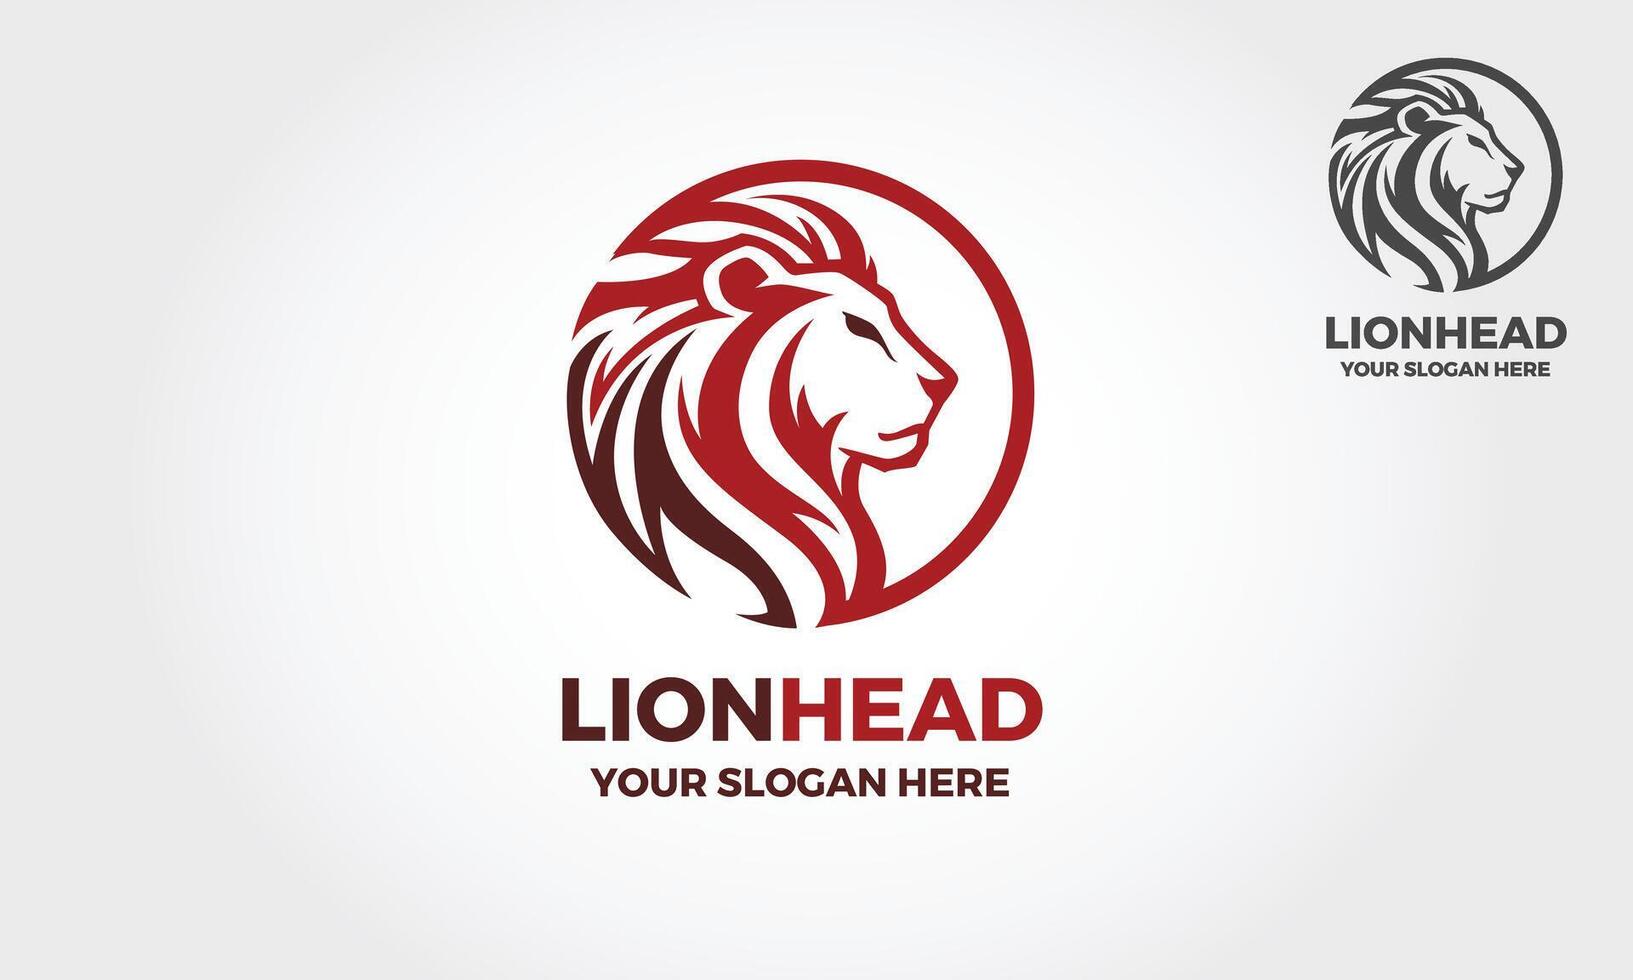 león cabeza logo modelo adecuado para negocios y producto nombres elemento para el marca identidad, vector ilustración.